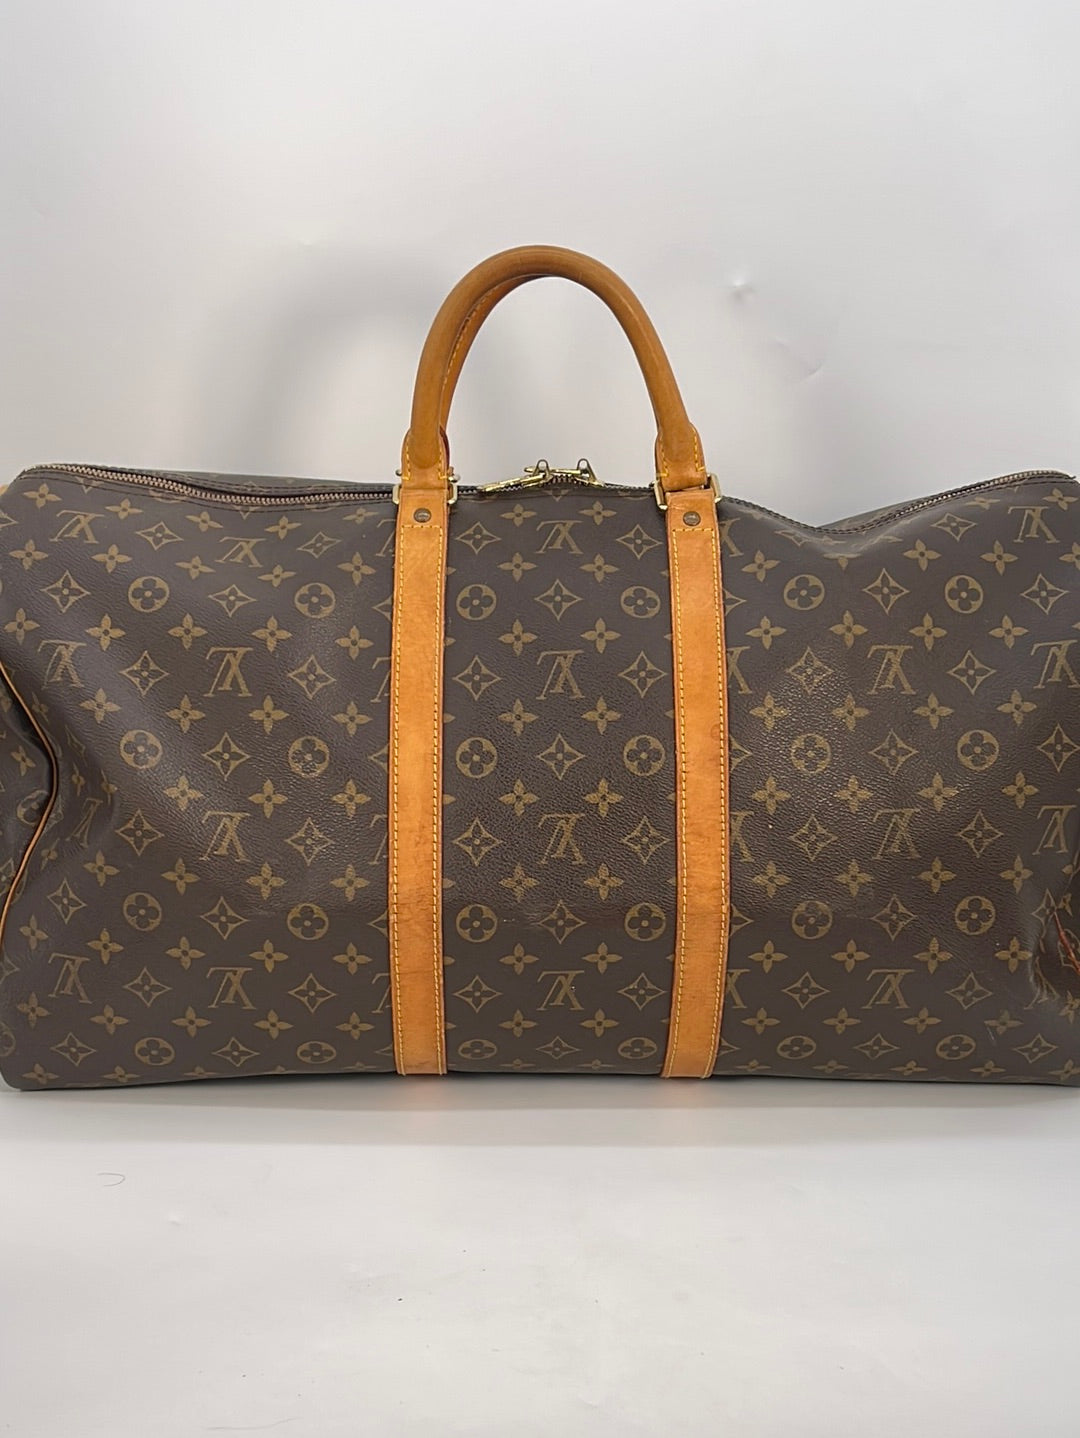 PRELOVED Louis Vuitton Keepall Bandouliere 55 Monogram Duffel Bag TH09 –  KimmieBBags LLC